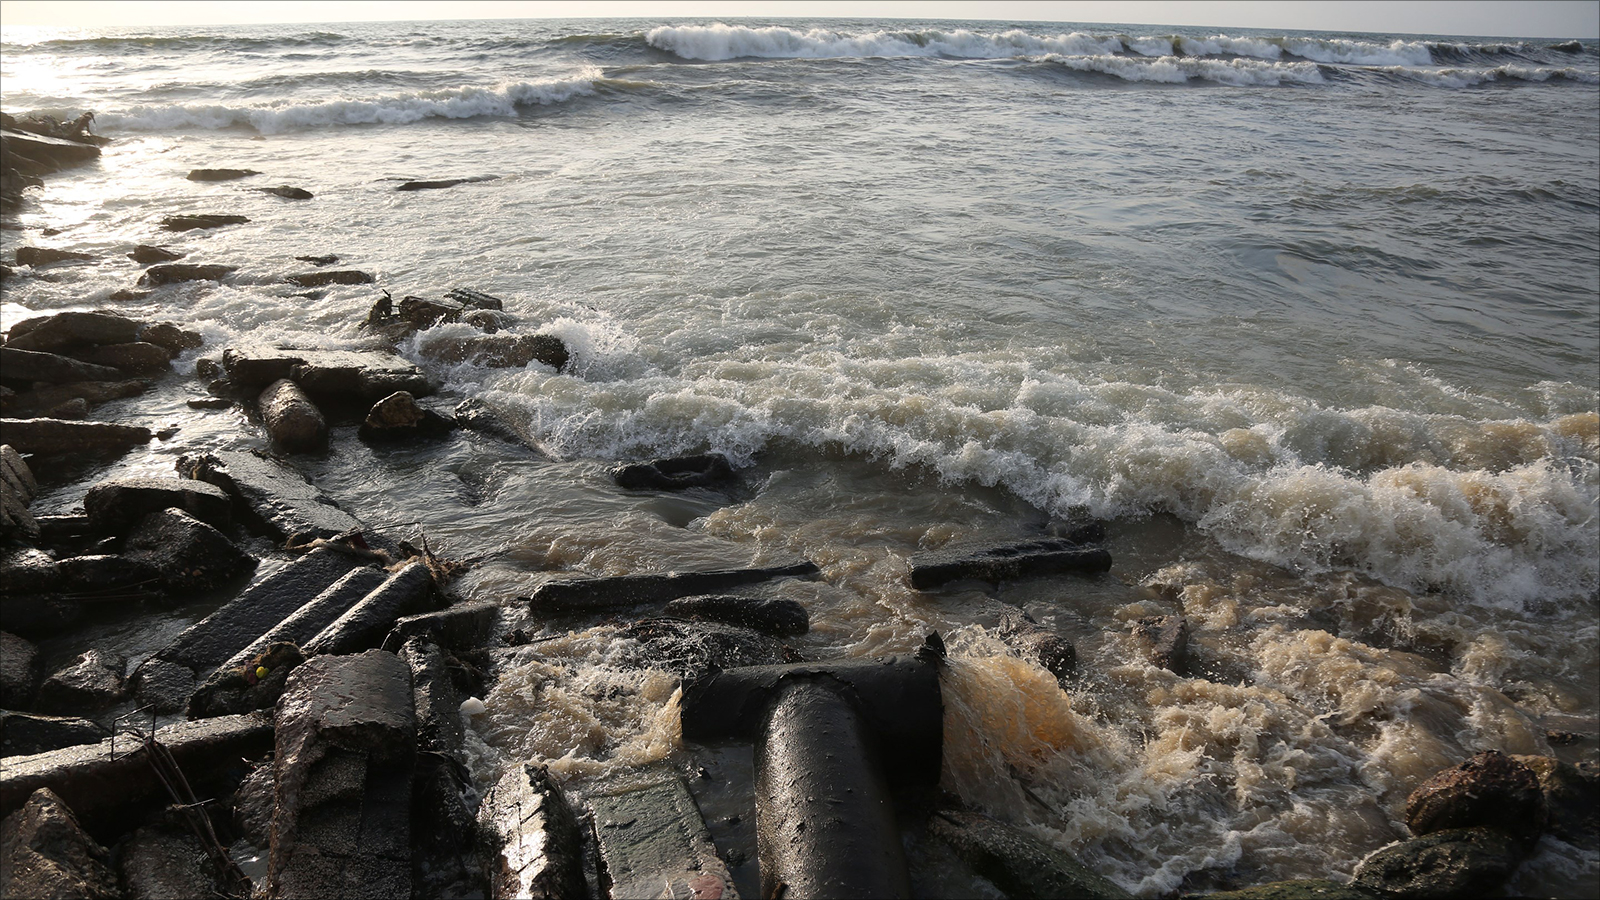 كميات كبيرة من الصرف الصحي يتم ضخها في البحر يوميا بدون معالجة (الجزيرة نت)